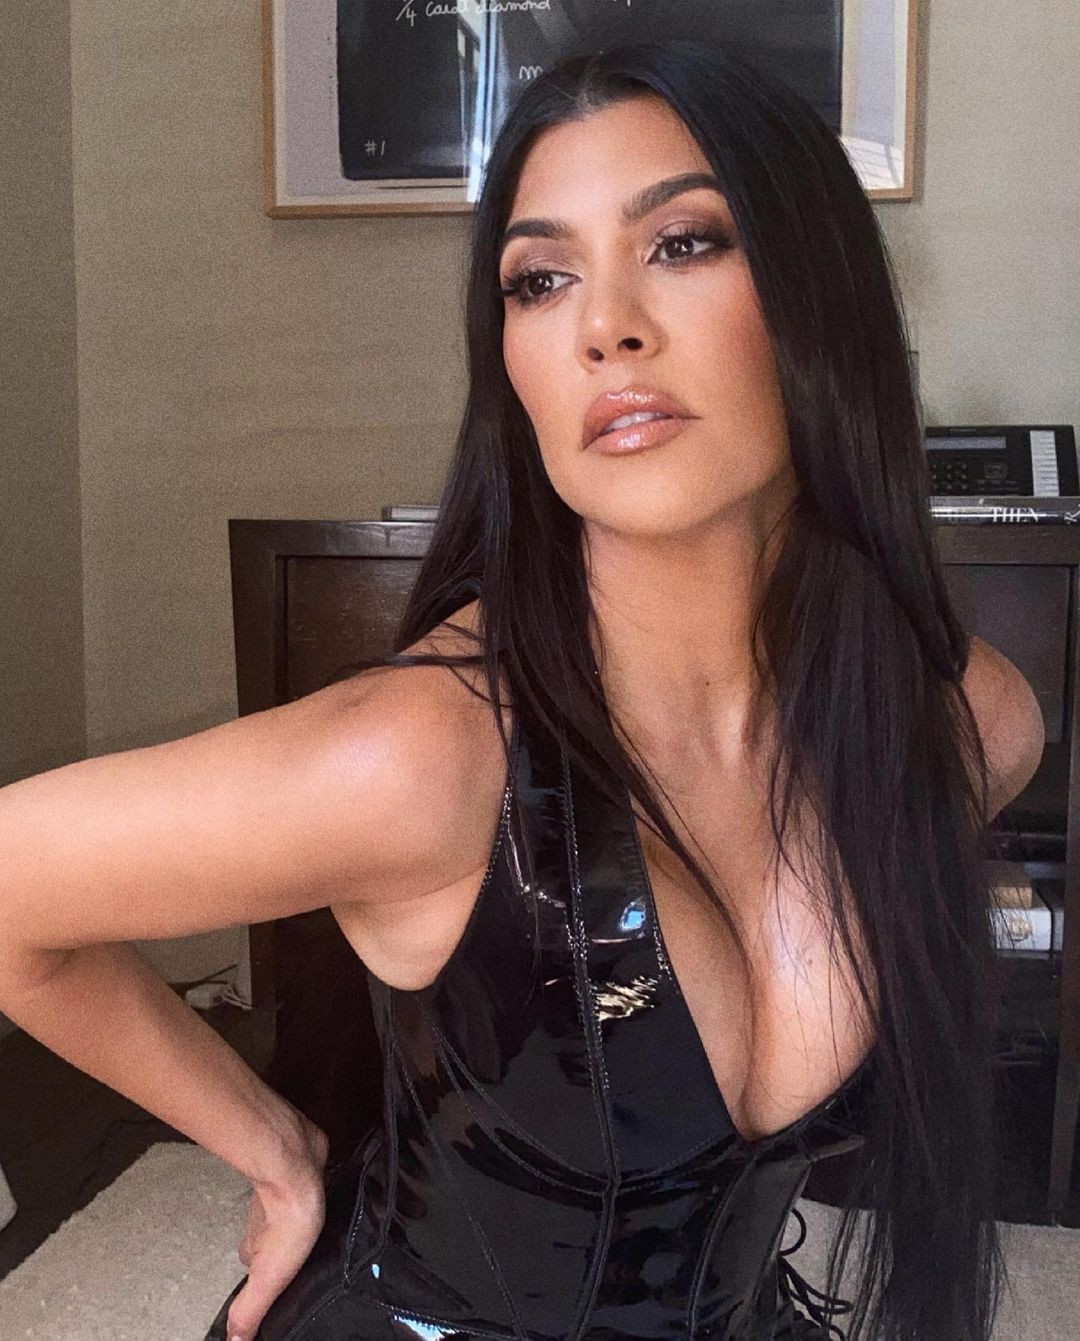 Kourtney Kardashian publica fotos ousadas no Instagram (Foto: Reprodução/Instagram)